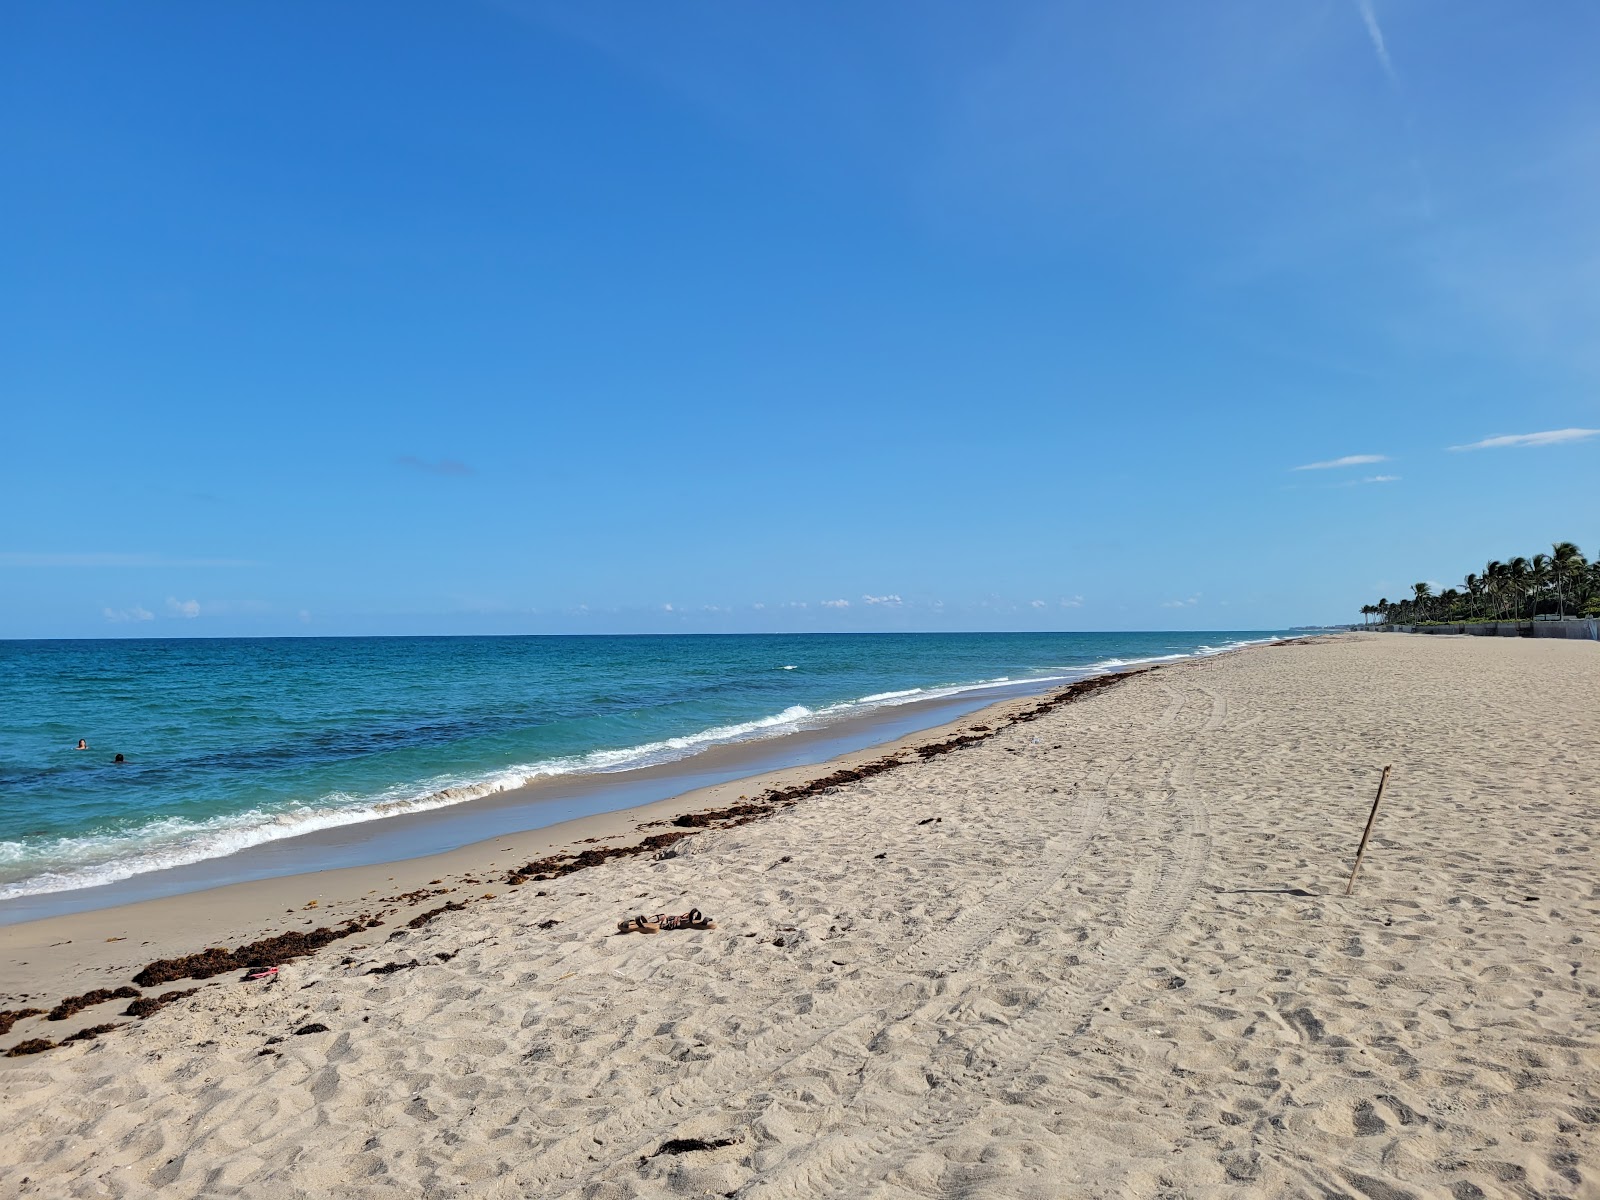 Foto de Palm Island beach com areia brilhante superfície